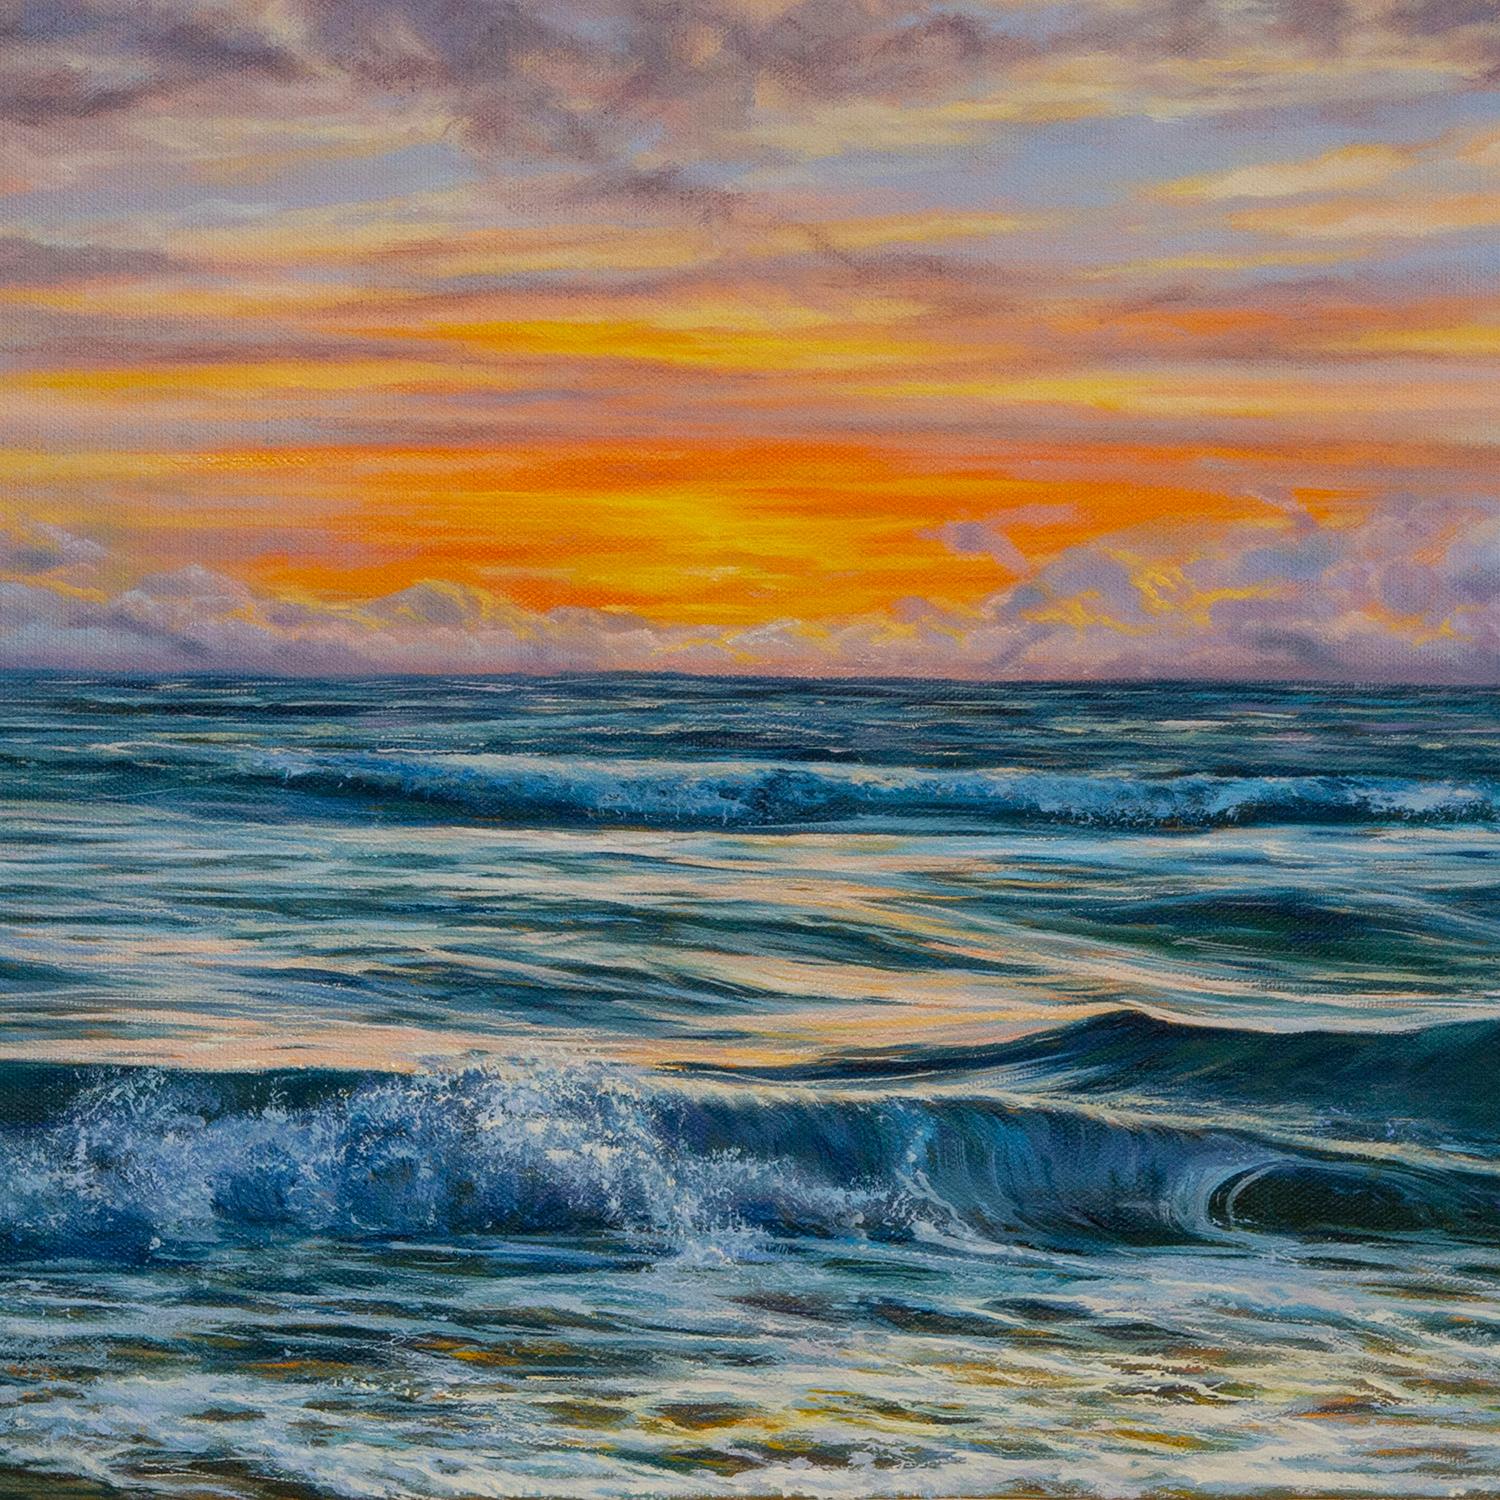 <p>Kommentare des Künstlers<br>Bei Sonnenuntergang wechselt der Himmel von Blau zu Lila und Rosa. Das Meer reflektiert subtil die ätherischen Farben von oben und verleiht seiner Oberfläche einen schimmernden Glanz. Die weichen Wolken und die